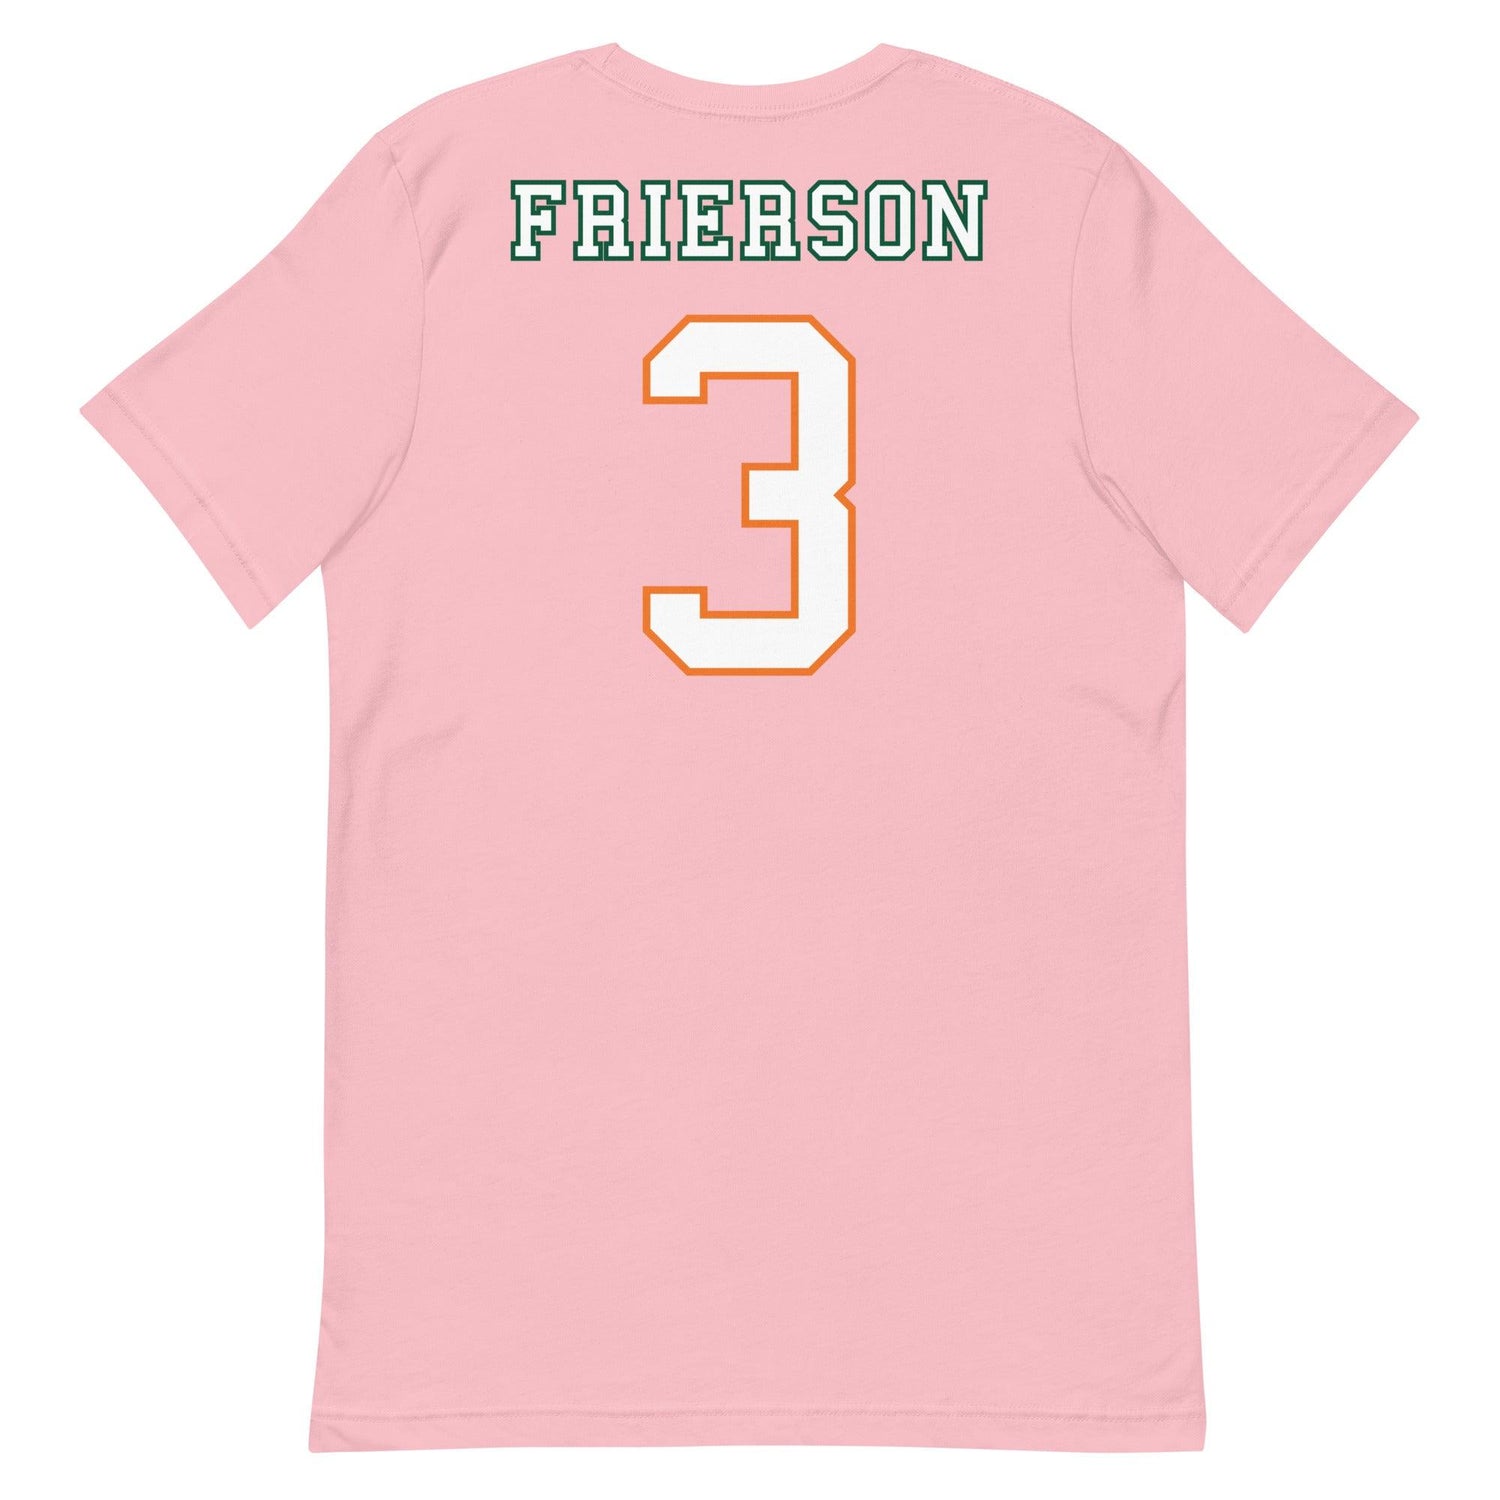 Gilbert Frierson "Jersey" t-shirt - Fan Arch